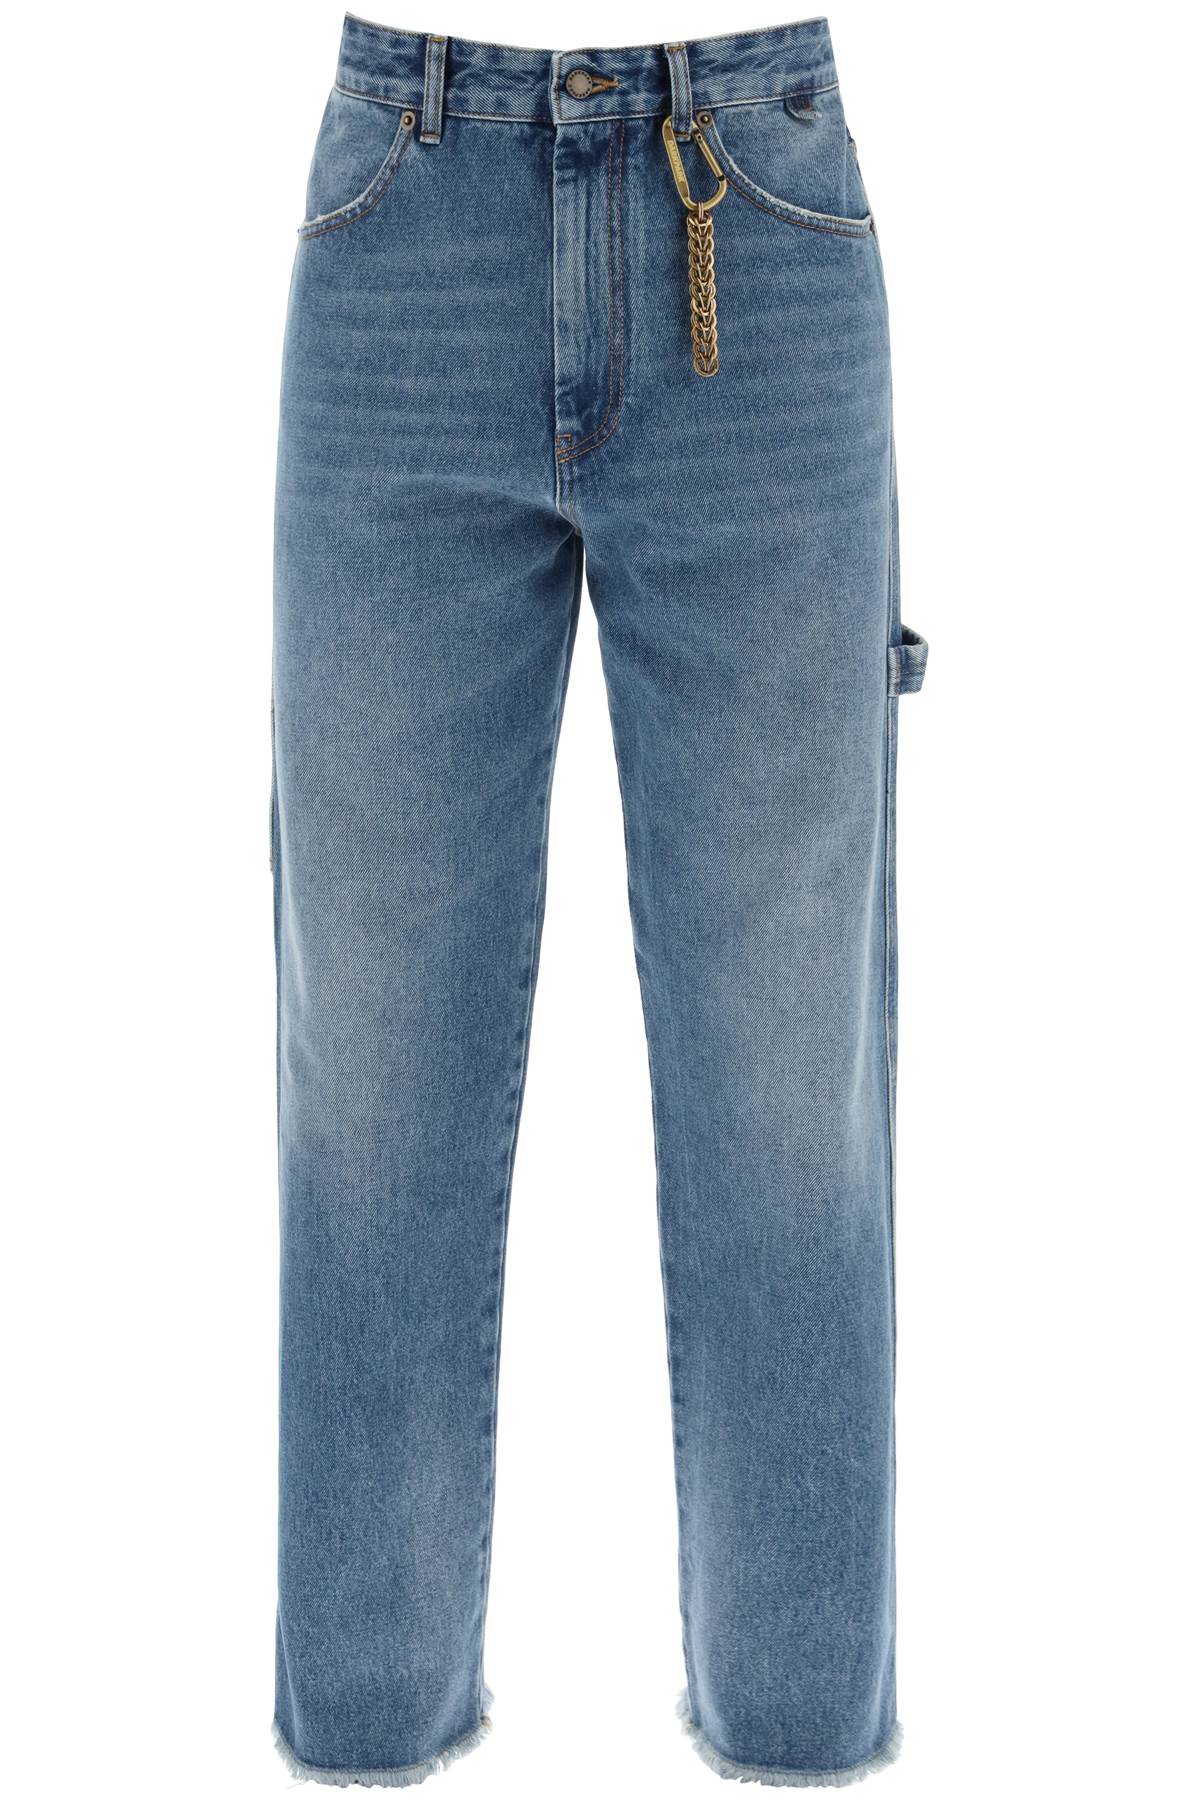 Darkpark john workwear jeans-0